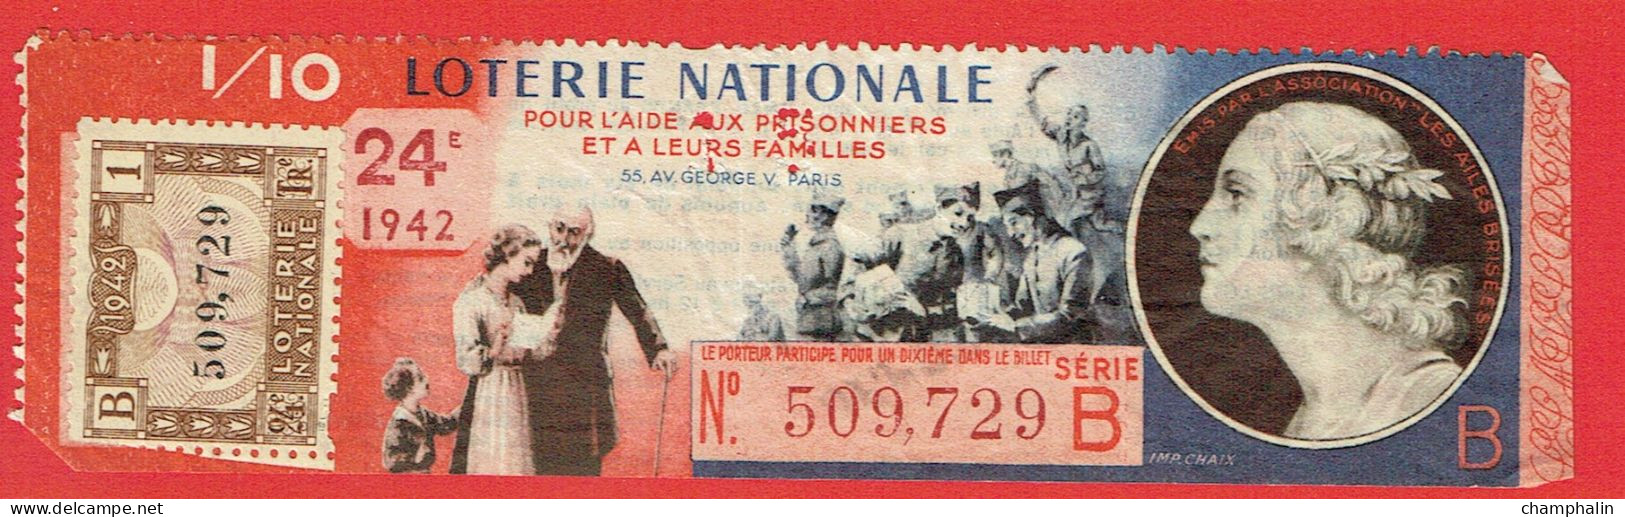 France - Billet Loterie Nationale - Aide Aux Prisonniers & Leurs Familles - 1/10e 1942 Série B 24ème Tranche - N°509729 - Biglietti Della Lotteria